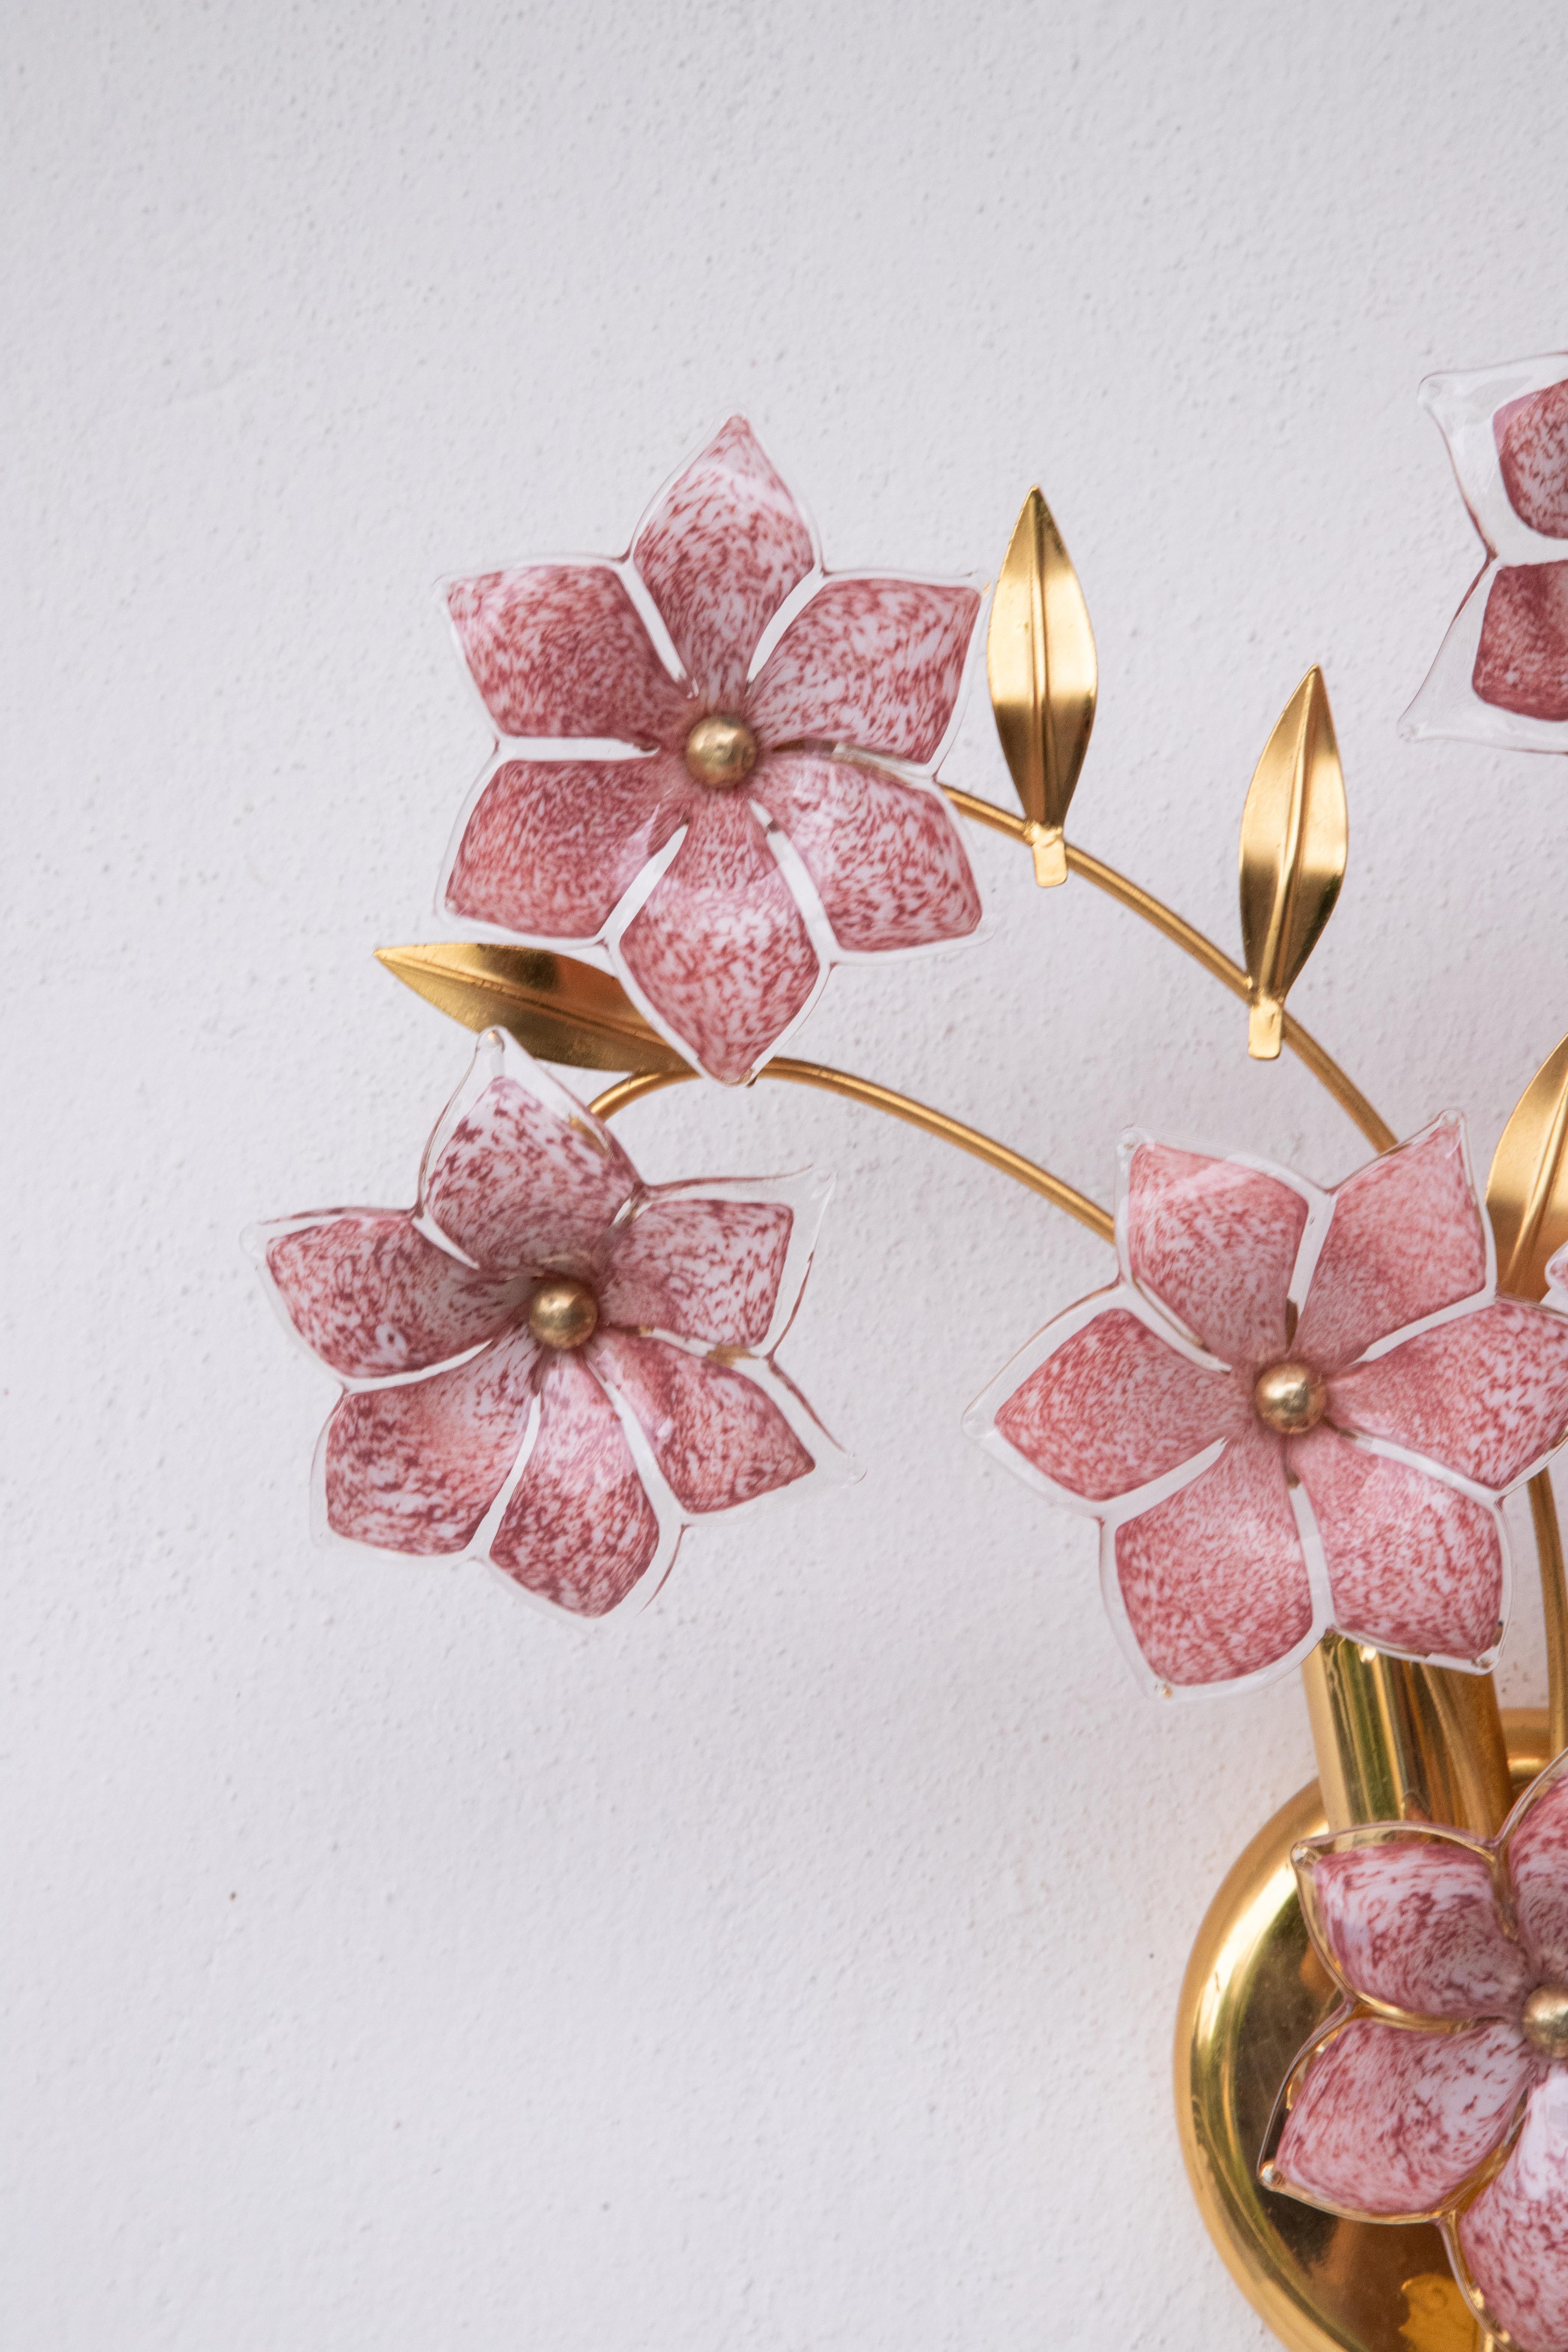 Jolie applique murale avec des fleurs roses en verre de Murano.
Convient pour deux ampoules à vis E14, normes européennes, possibilité de les remplacer par des normes américaines.
Mesures :
44 cm de largeur
Hauteur 45 cm
13 cm de profondeur